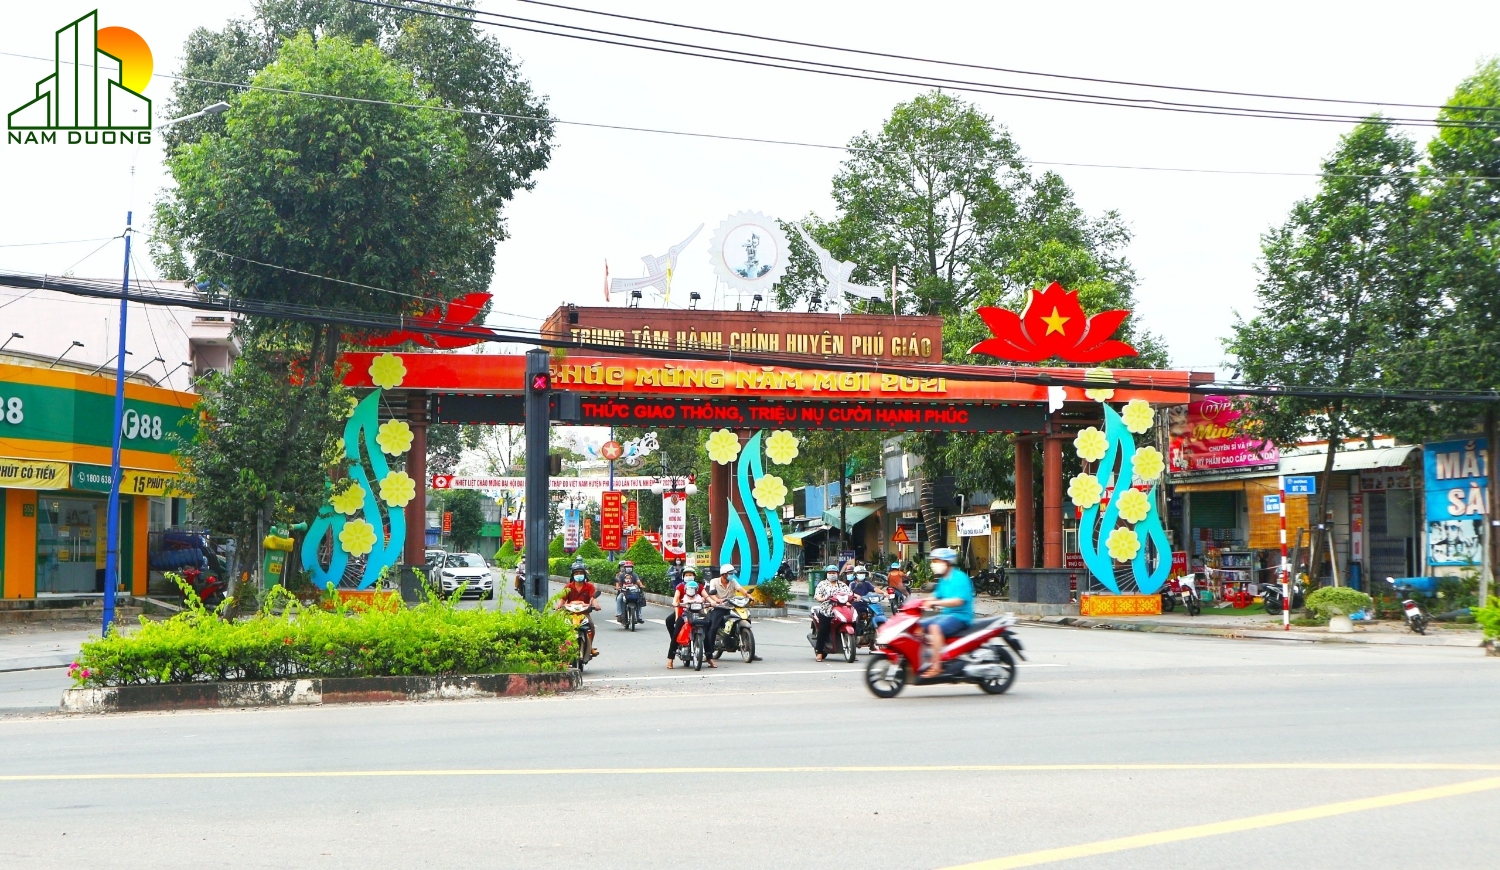 Quy hoạch thị trấn Phước Vĩnh (Phú Giáo) đến năm 2030 Xứng tầm đô thị trung tâm